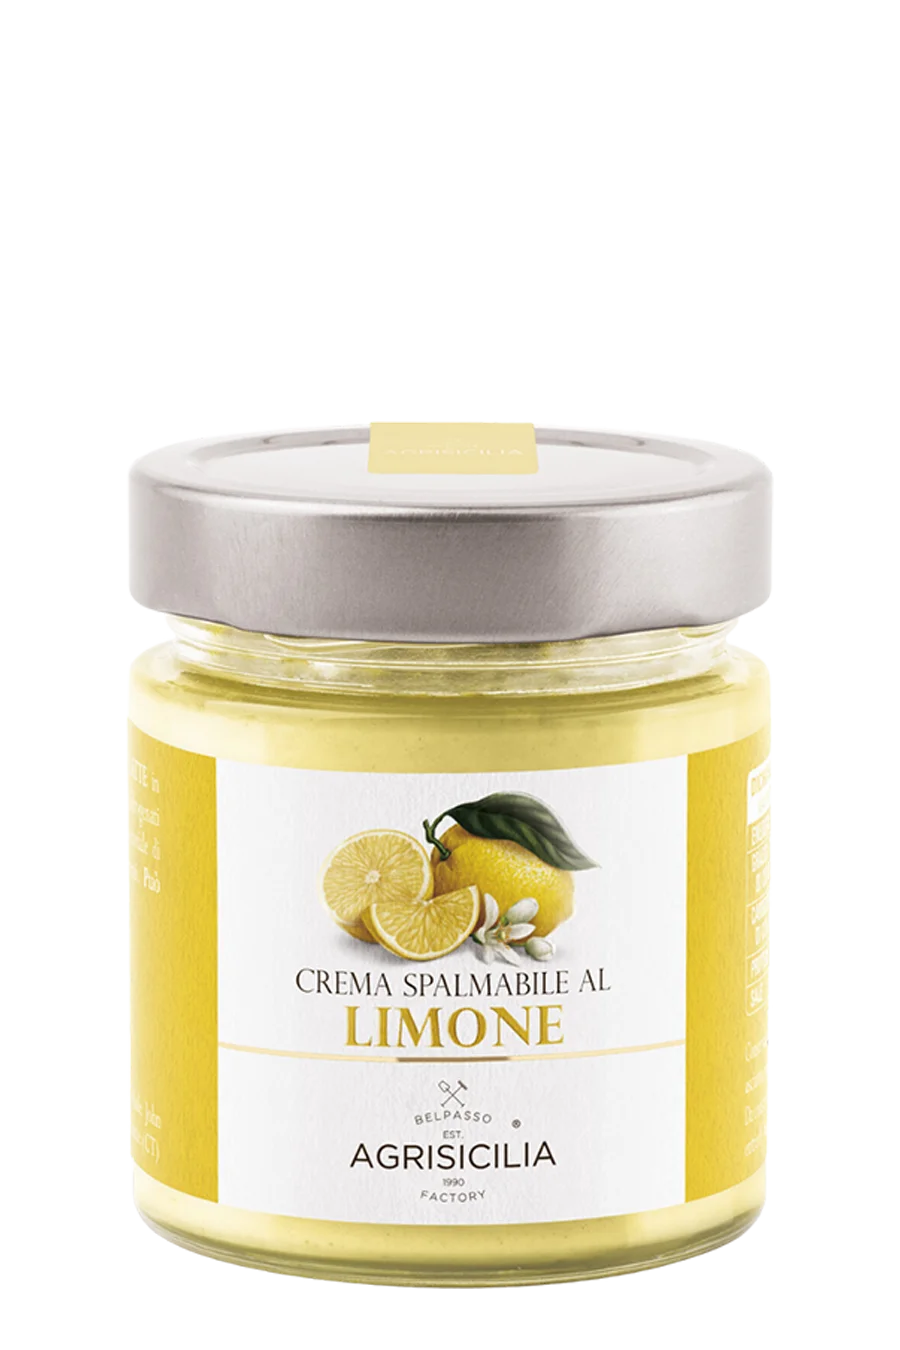 Crema spalmabile al Limone